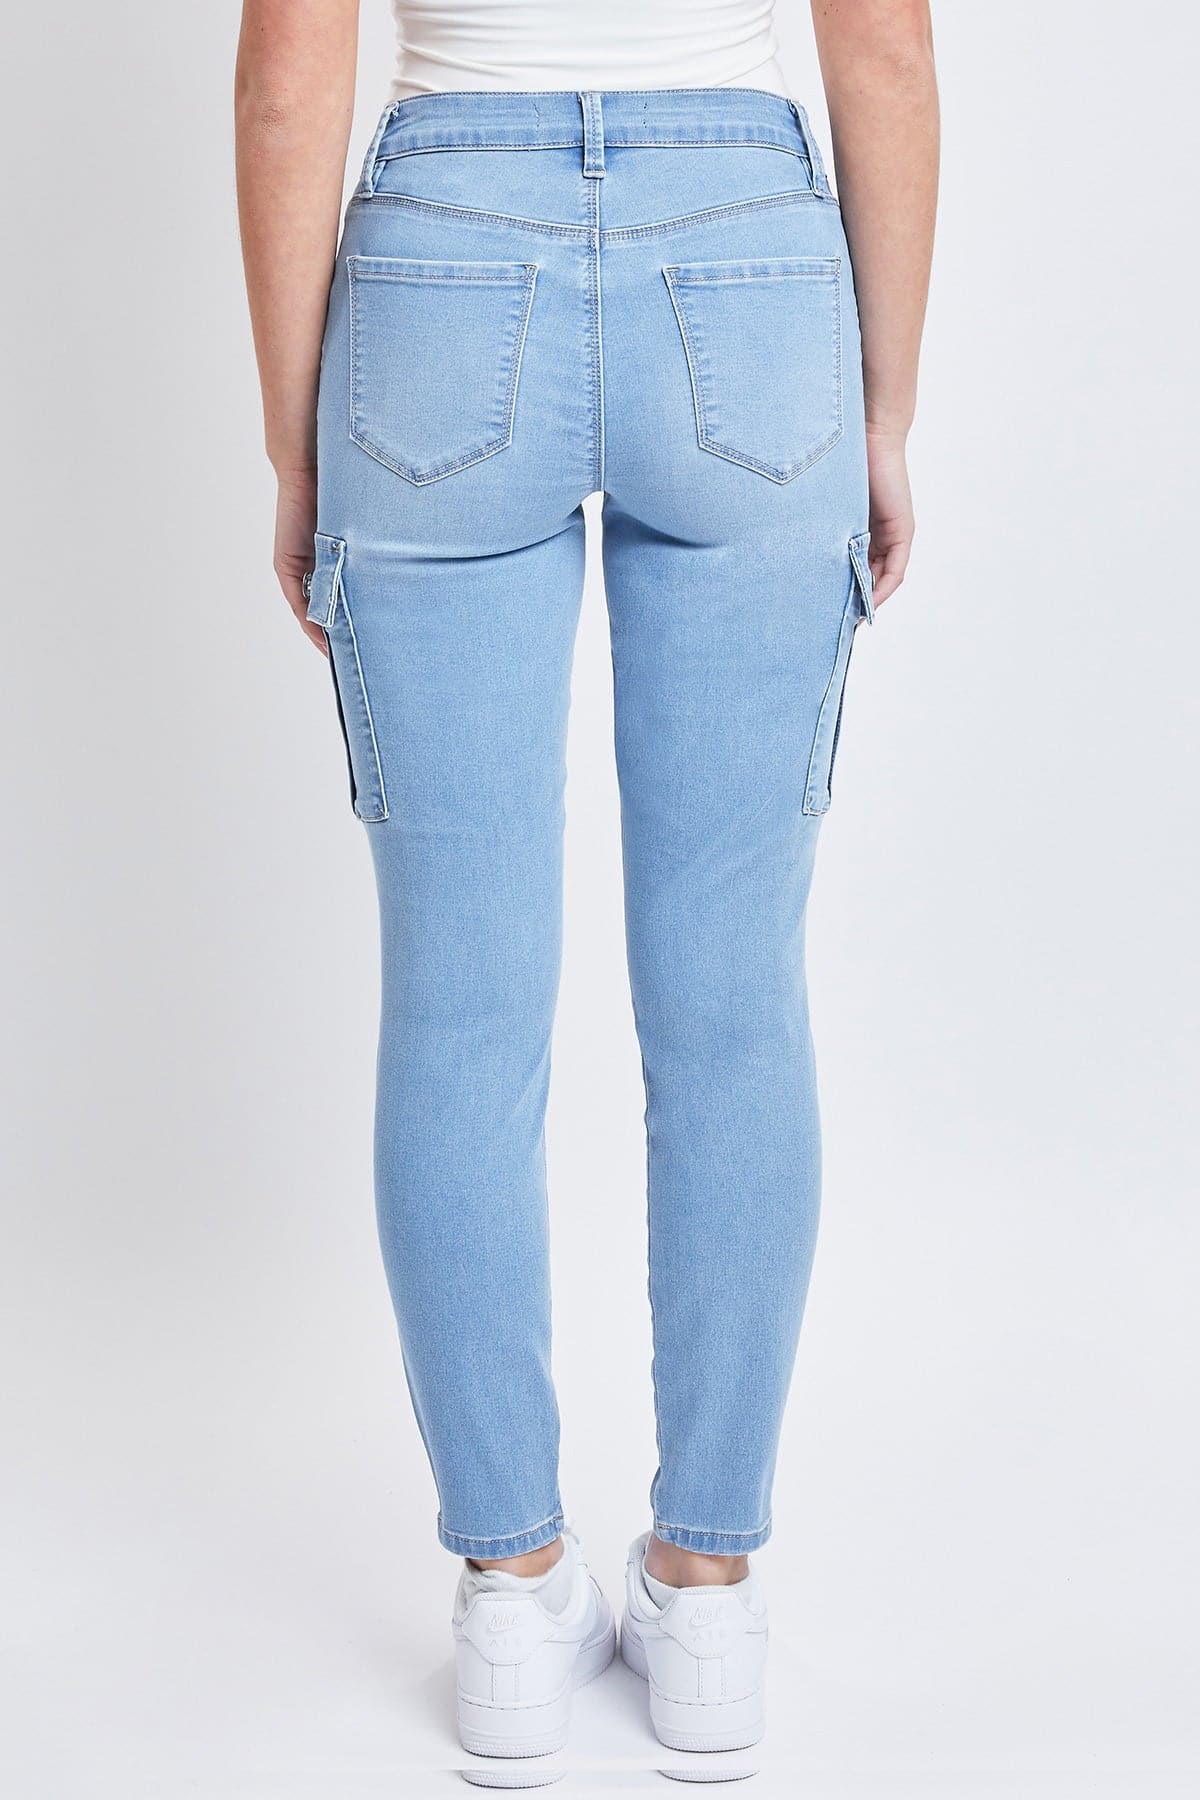 YMI Jeans cargo ajustados con botones hiperelásticos para mujer